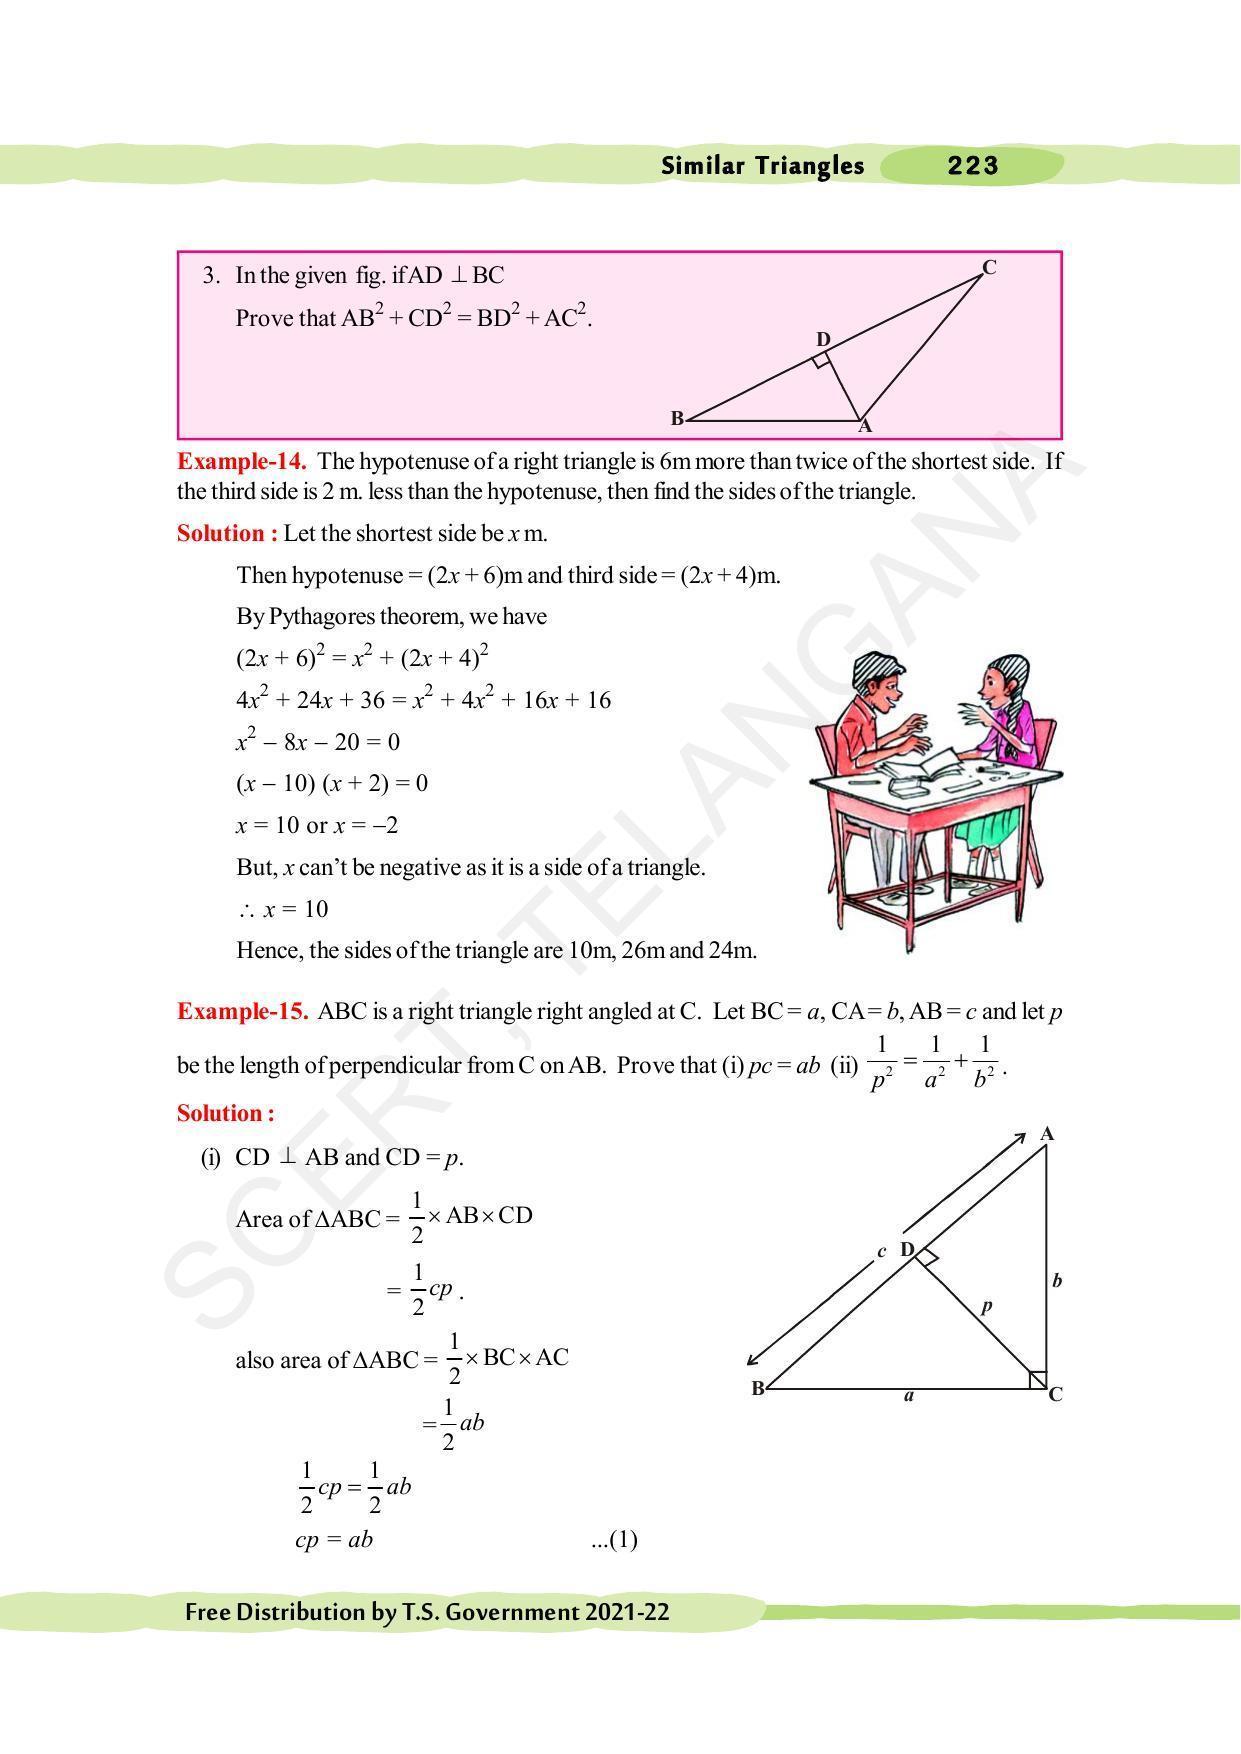 TS SCERT Class 10 Maths (English Medium) Text Book - Page 233